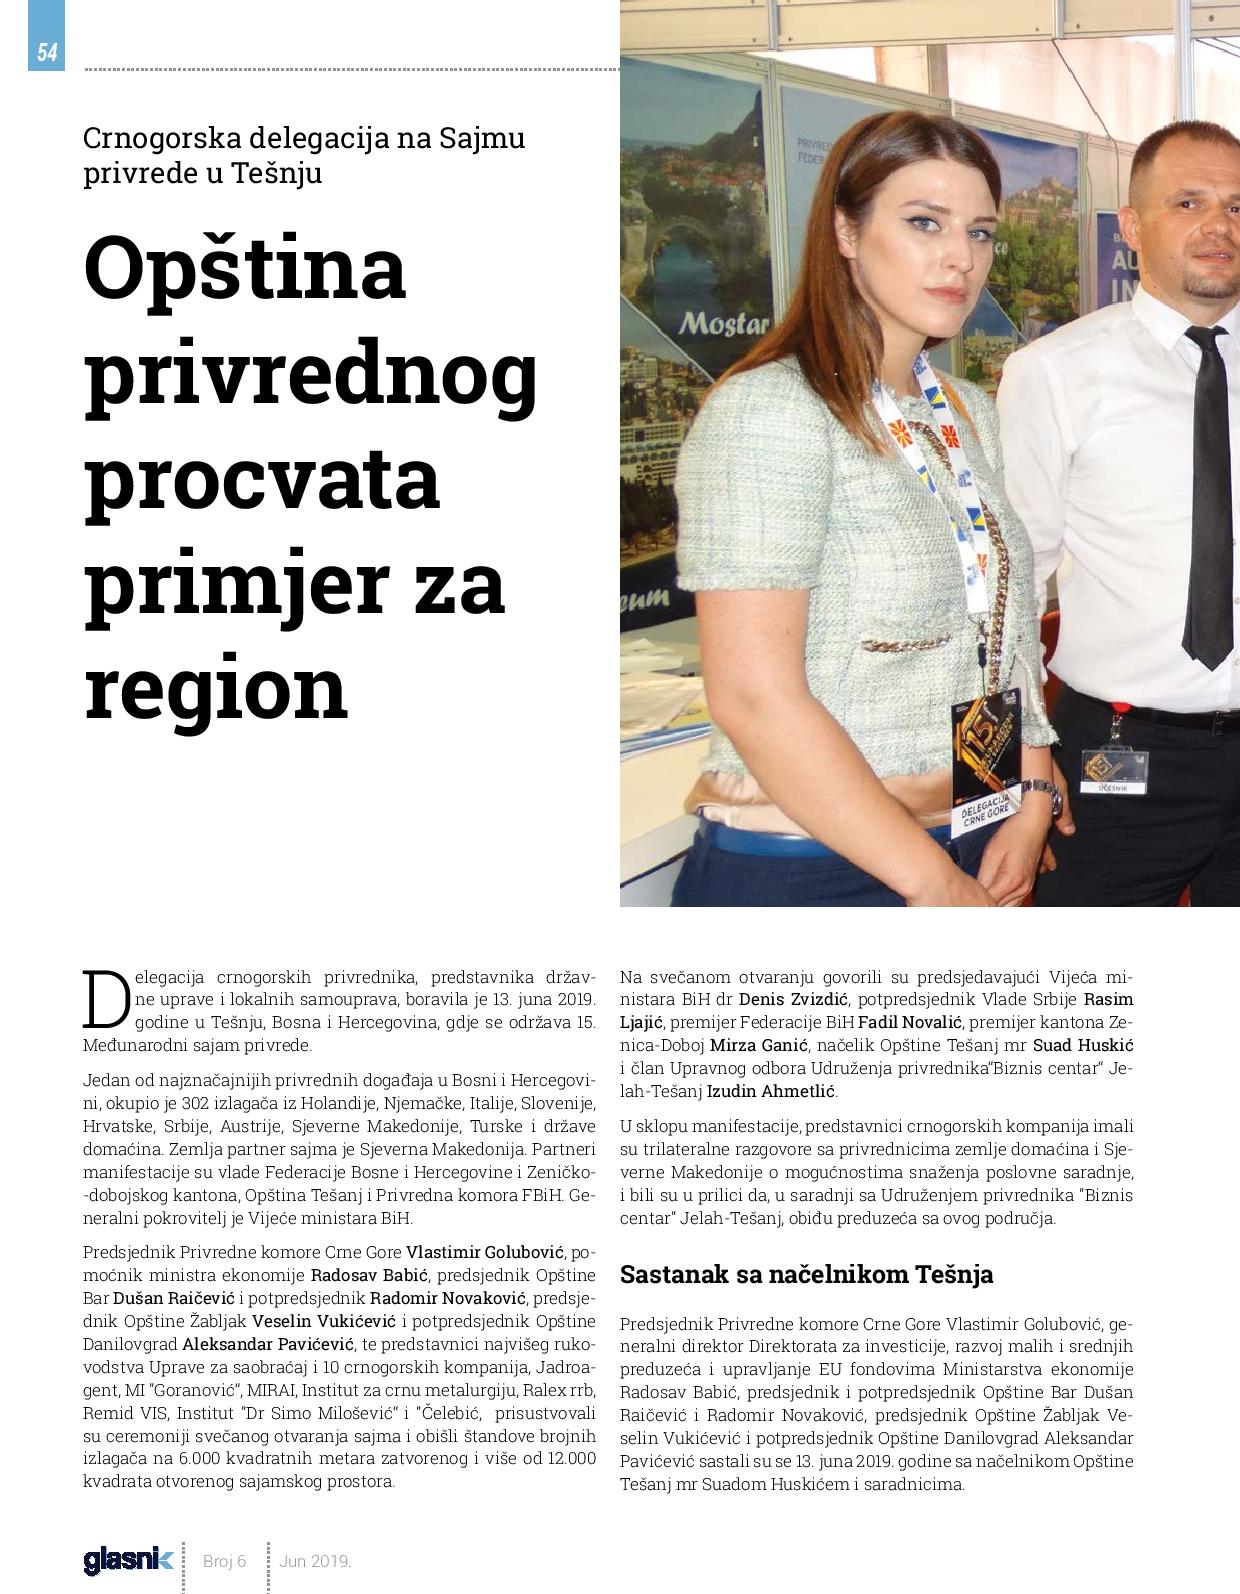 Crnogorska delegacija na Sajmu privrede u Tešnju: Opština privrednog procvata primjer za region